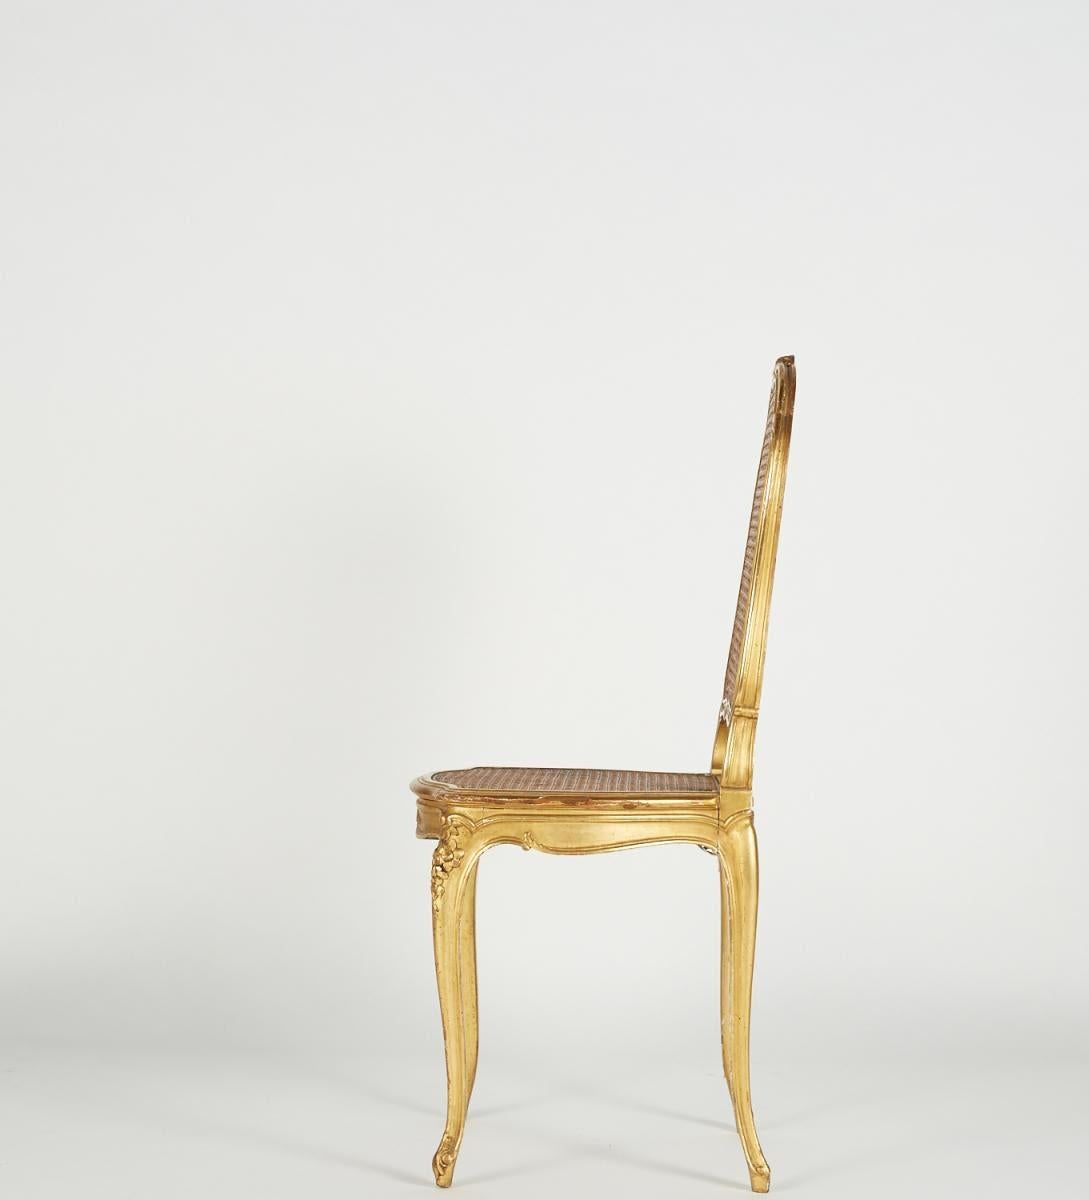 Vergoldeter Stuhl im Stil Louis XV, 19. Jahrhundert.

Stuhl im Stil Louis XV aus geschnitztem und vergoldetem Holz, Sitz und Rückenlehne aus Schilfrohr, Ende 19. Jahrhundert, fehlende Vergoldung, die auf Anfrage restauriert werden